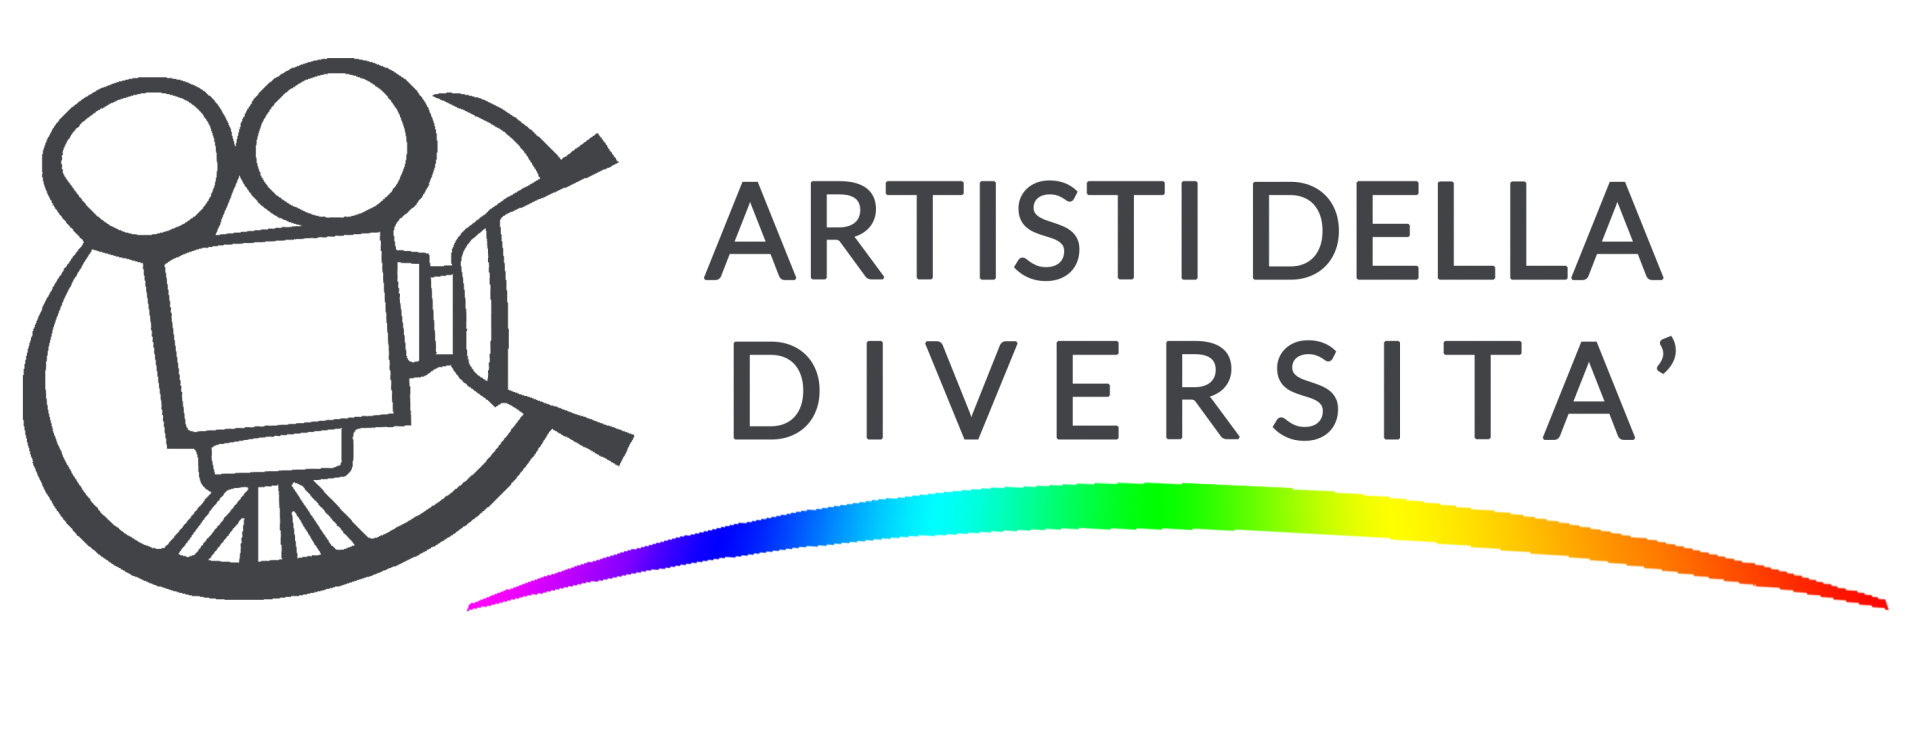 Artisti della diversità